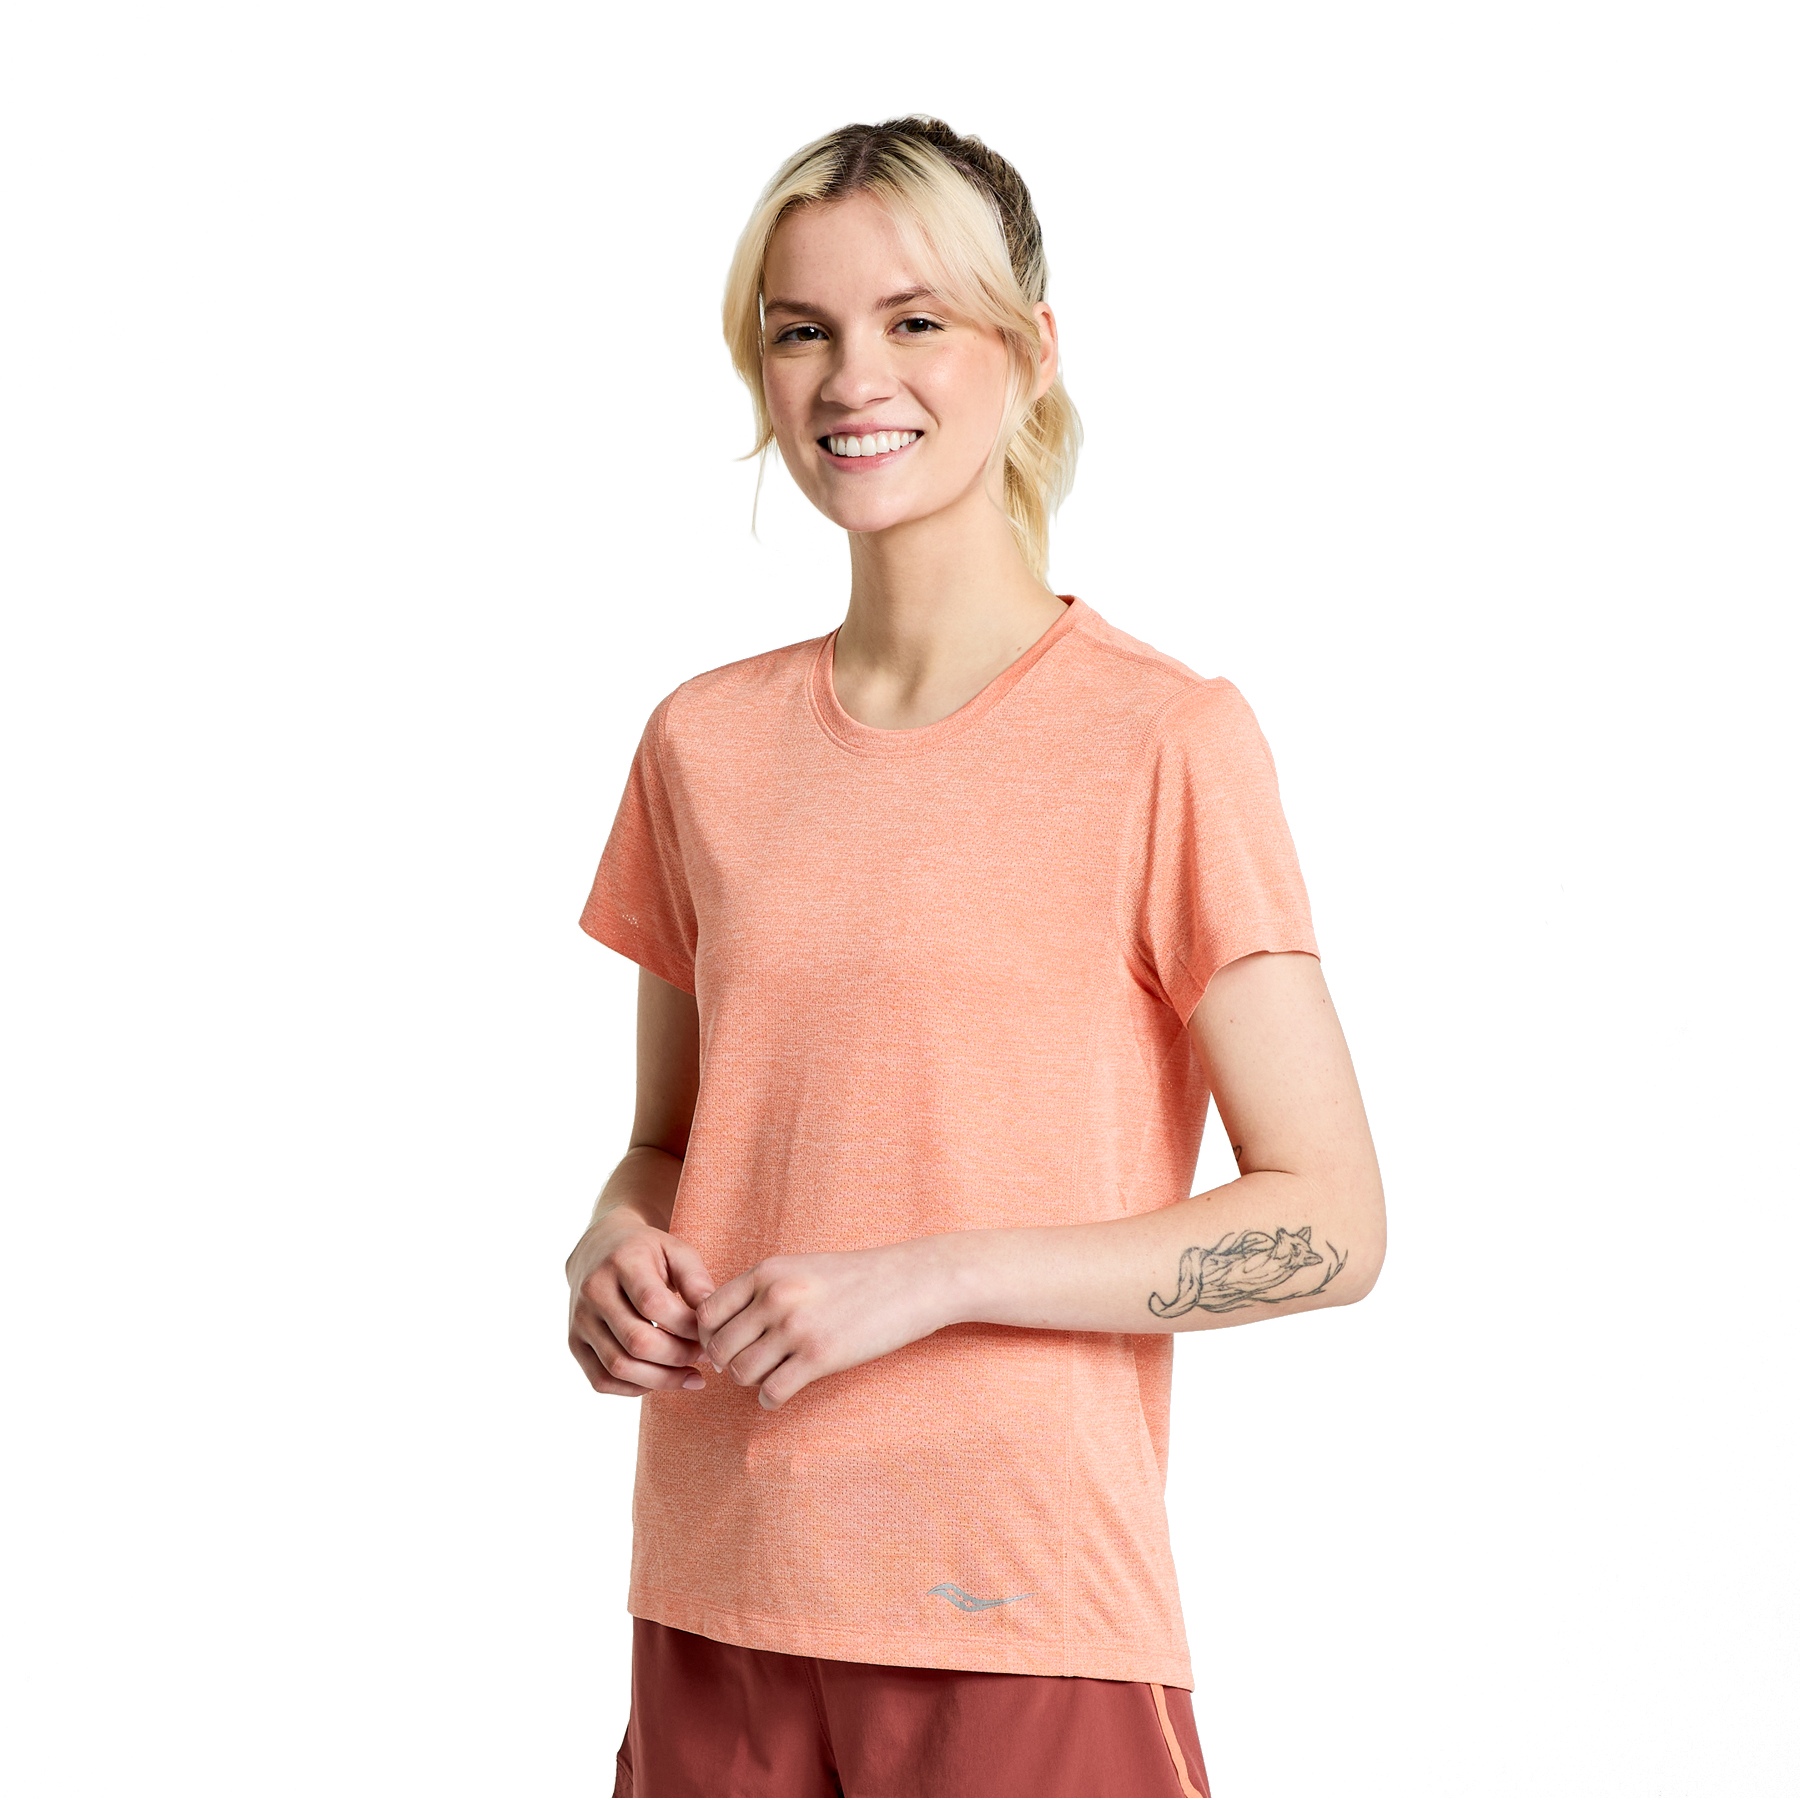 Produktbild von Saucony Stopwatch Kurzarm-Shirt Damen - zenith heather